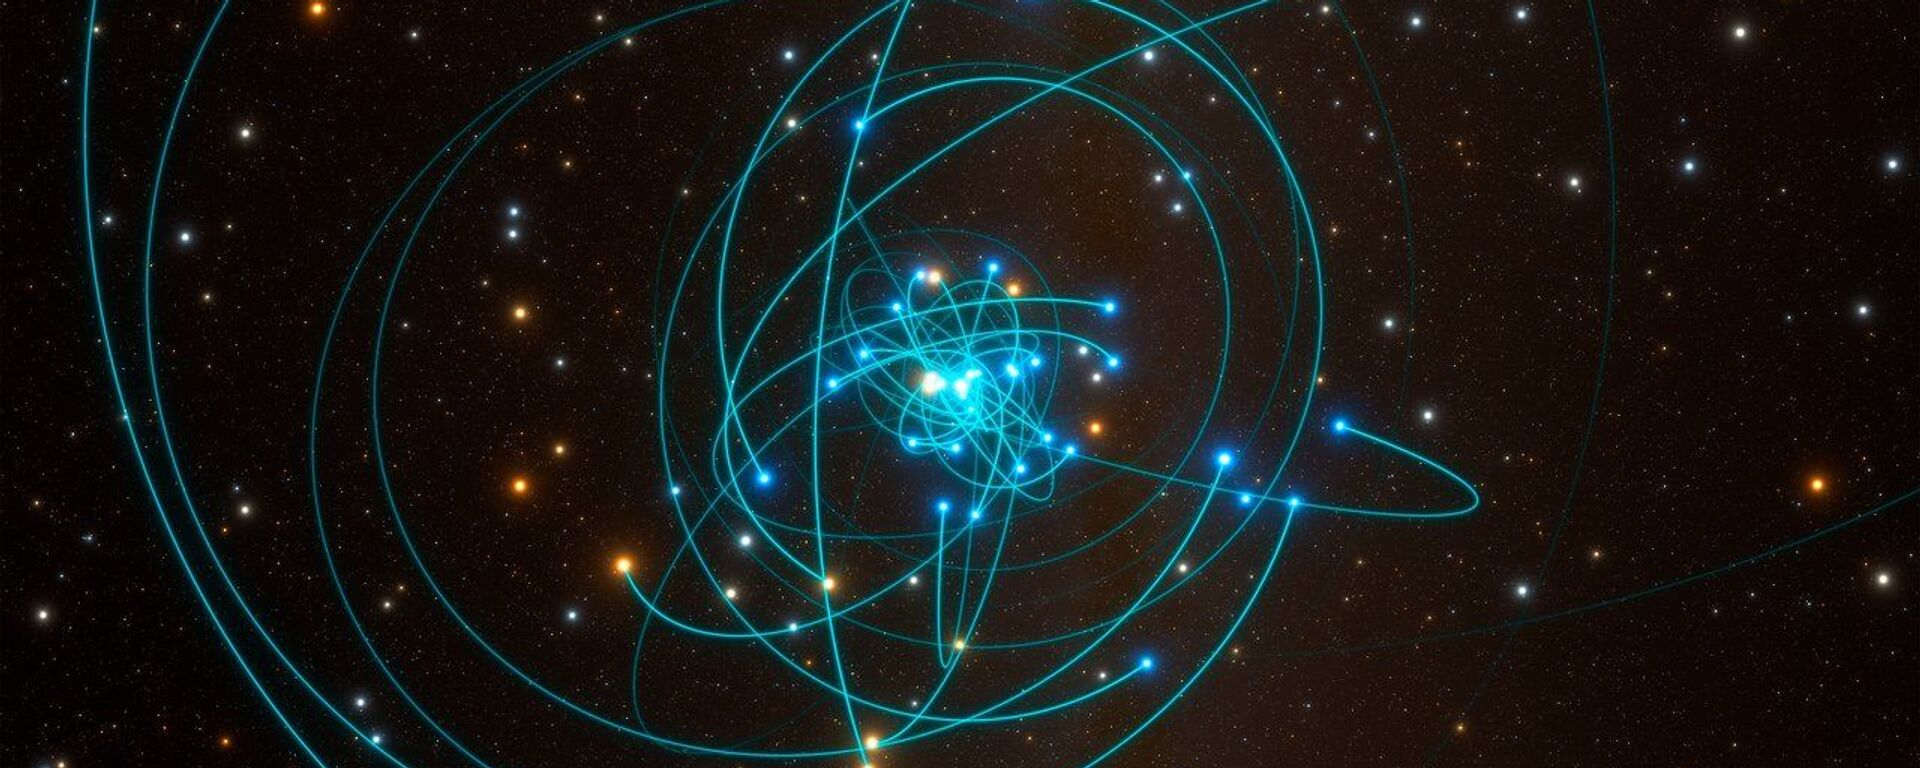 Órbitas de las estrellas alrededor del agujero negro del centro de la Vía Láctea - Sputnik Mundo, 1920, 17.04.2020